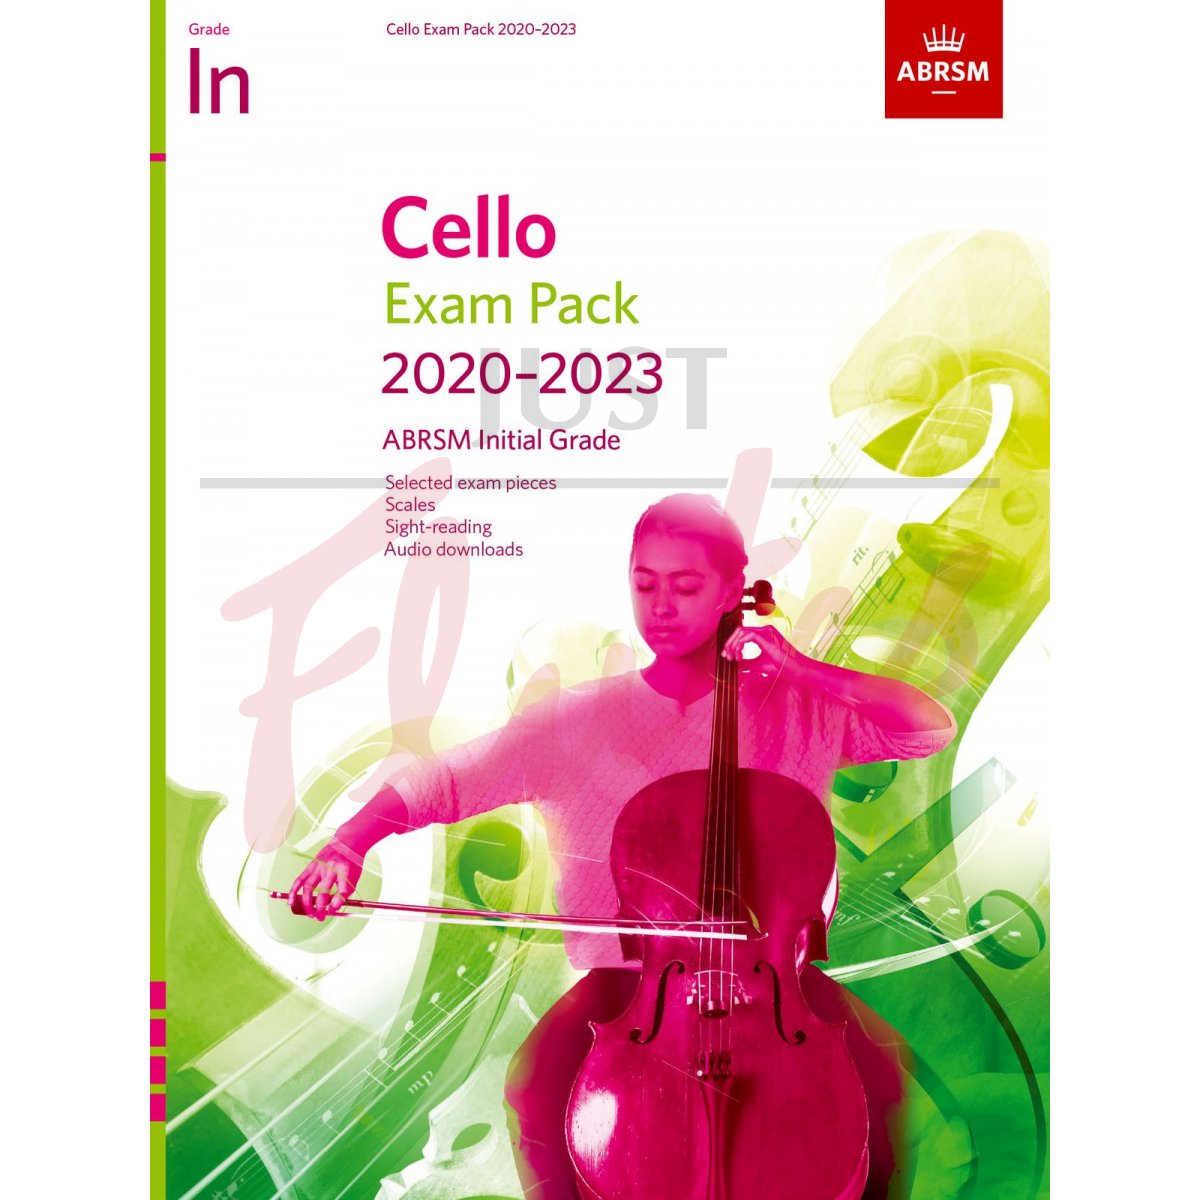 Cello Exam Pack 2020-2023, Initial